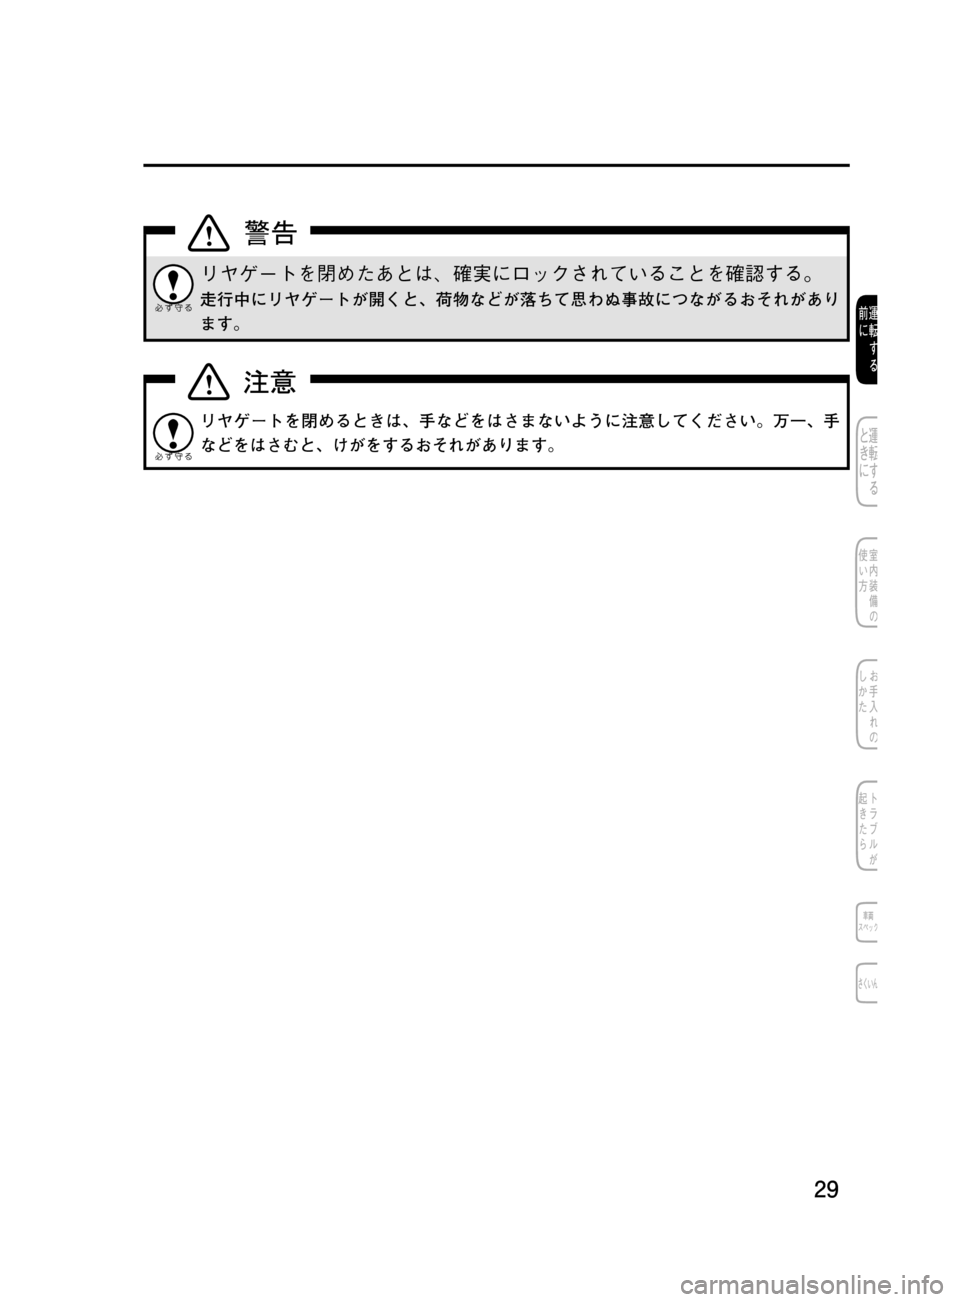 MAZDA MODEL DEMIO 2011  デミオ｜取扱説明書 (in Japanese) ��
��P�S�N��/�P���% 